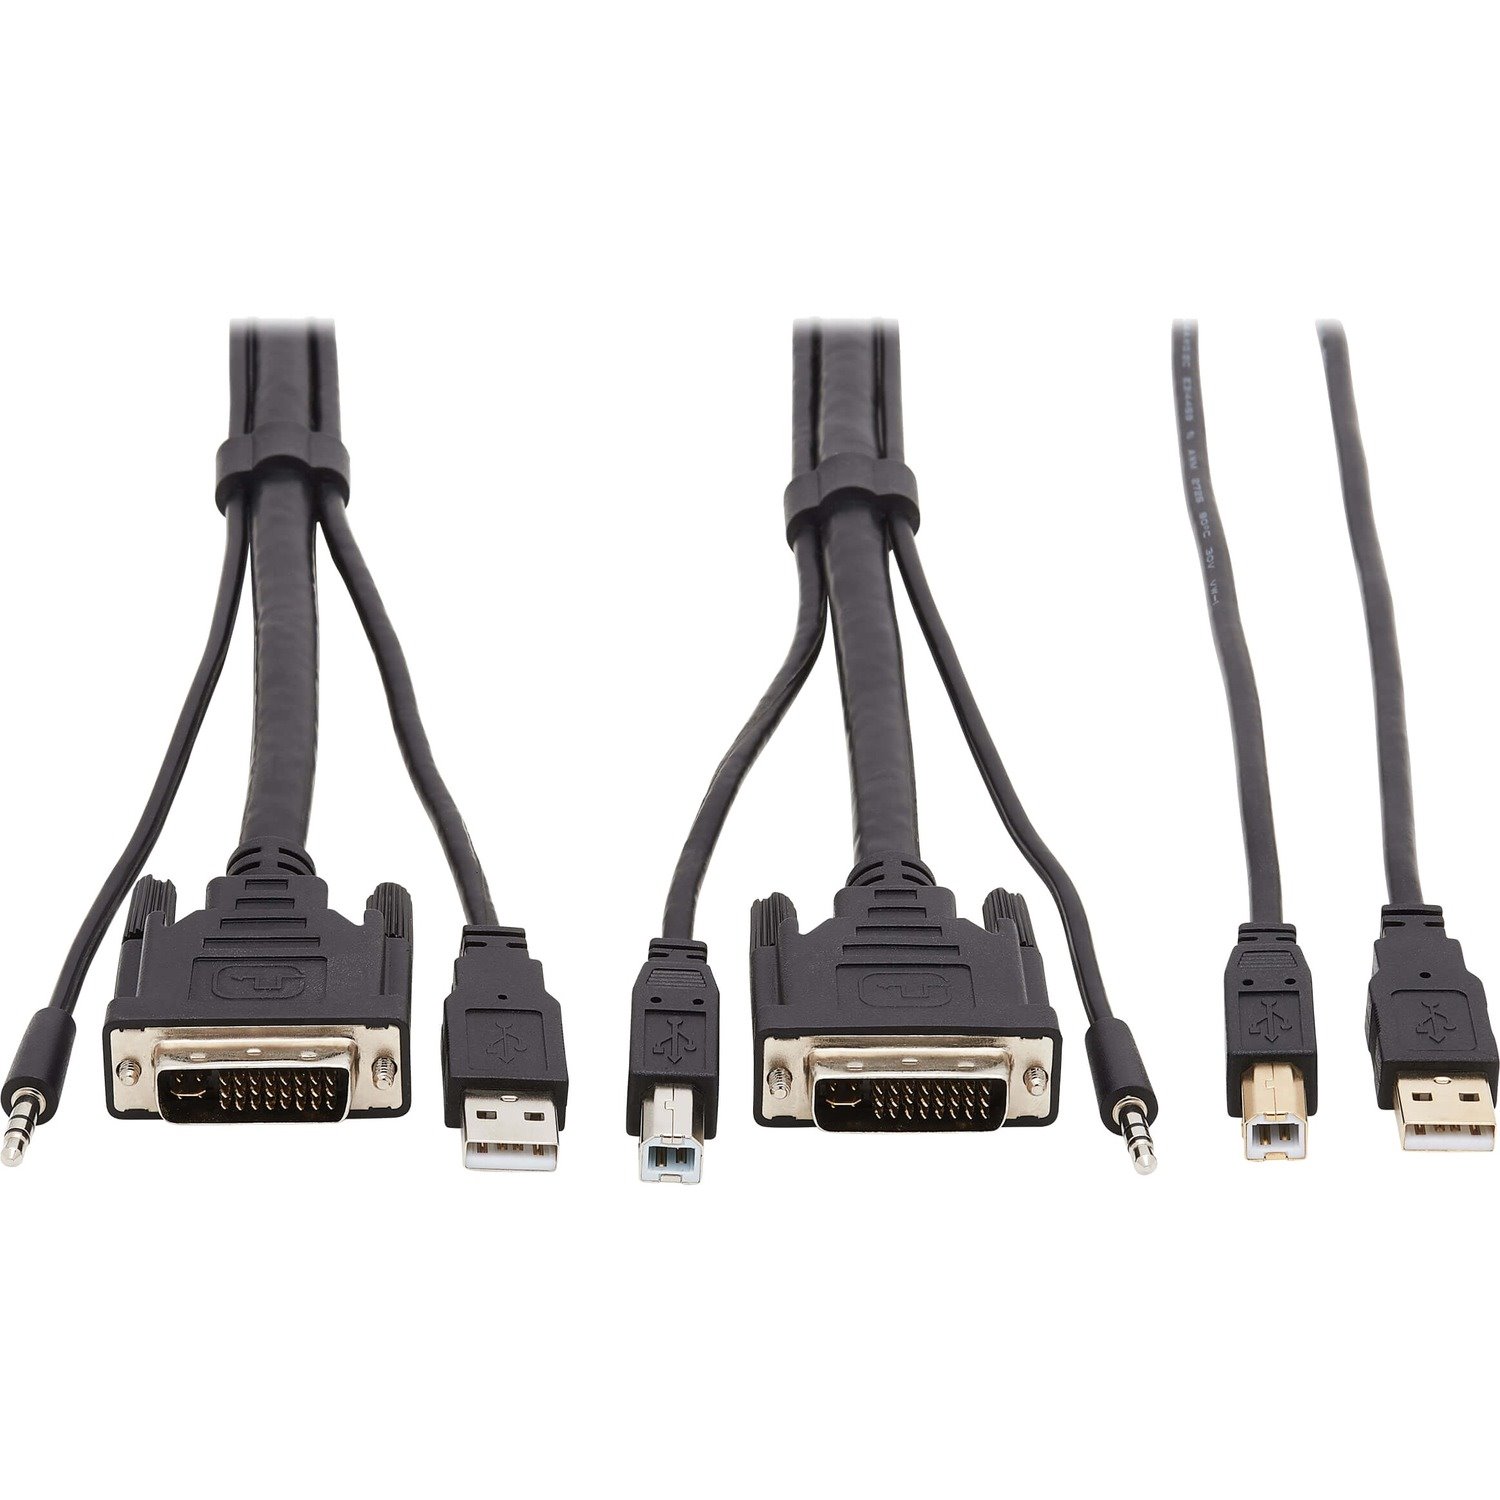 Tripp Lite by Eaton DVI KVM Cable Kit - DVI, USB, 3.5 mm Audio (3xM/3xM) + USB (M/M), 1080p, 10 ft. (3.05 m)